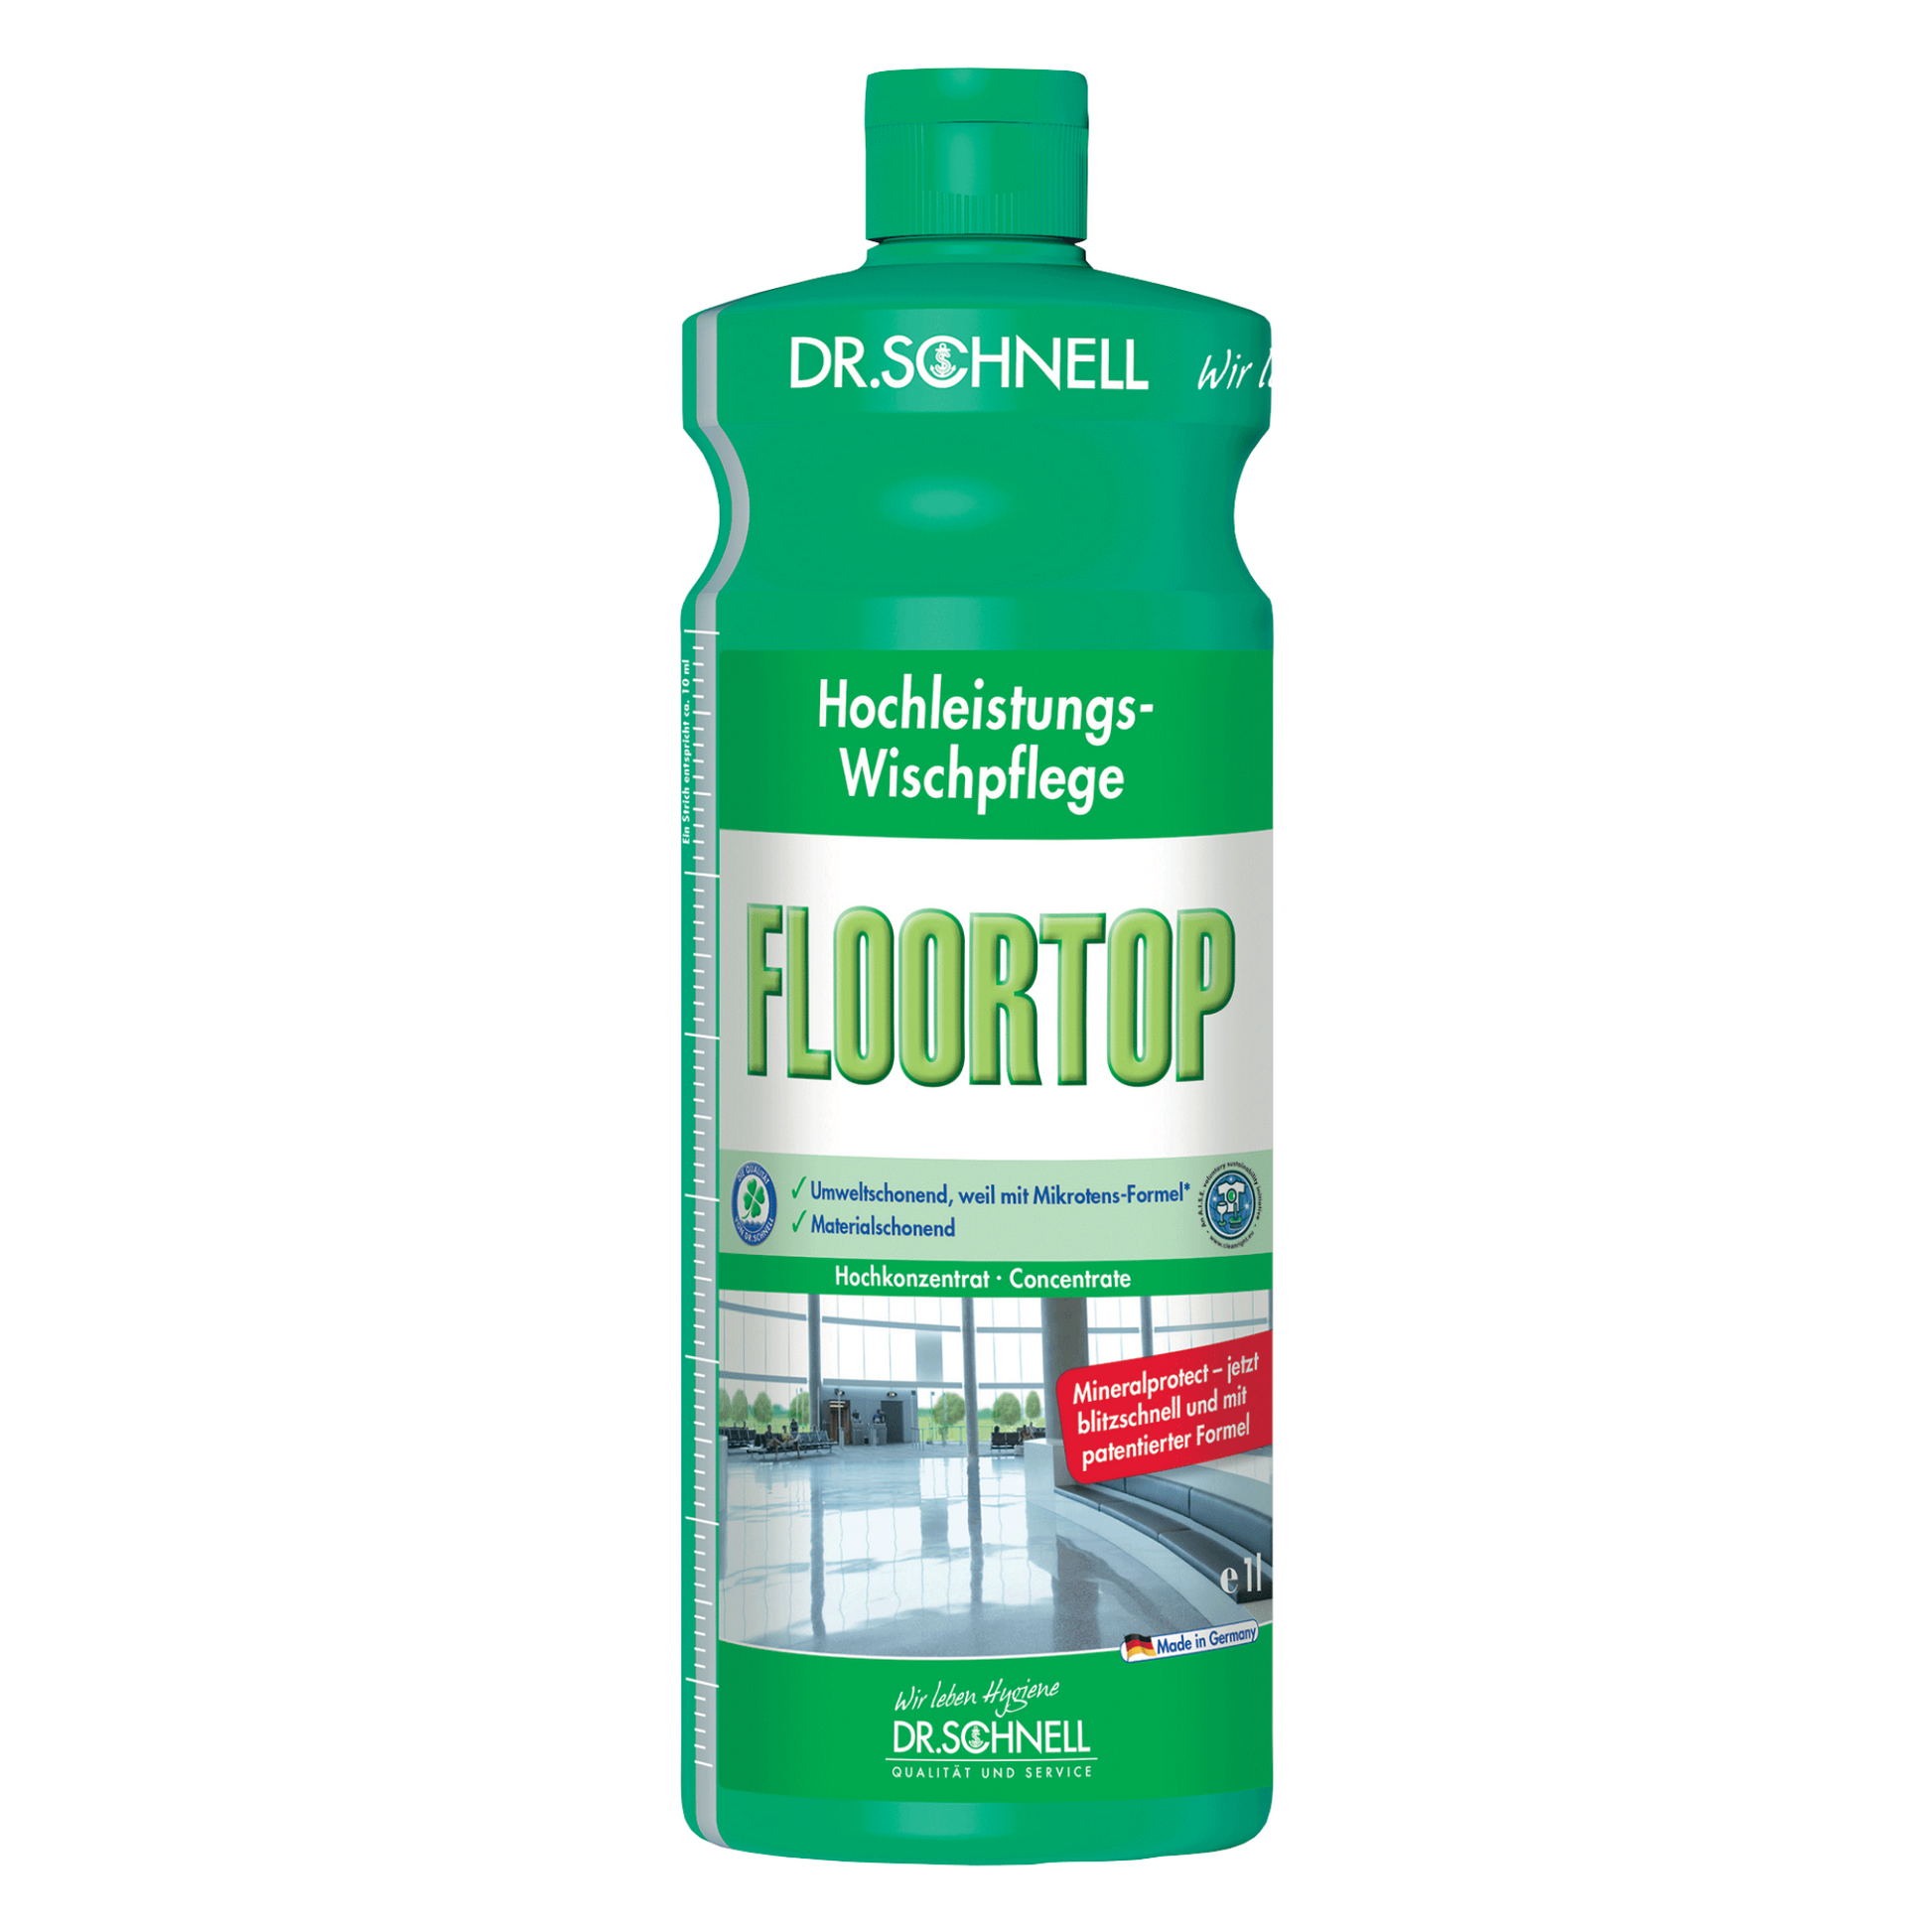 Eine Flasche Dr. Schnell Floortop Hochleistungs-Bodenreiniger in grüner Farbe mit Etiketten in deutscher Sprache, auf denen Bilder eines glänzenden Bodens und zusätzliche Produktdetails zu sehen sind.